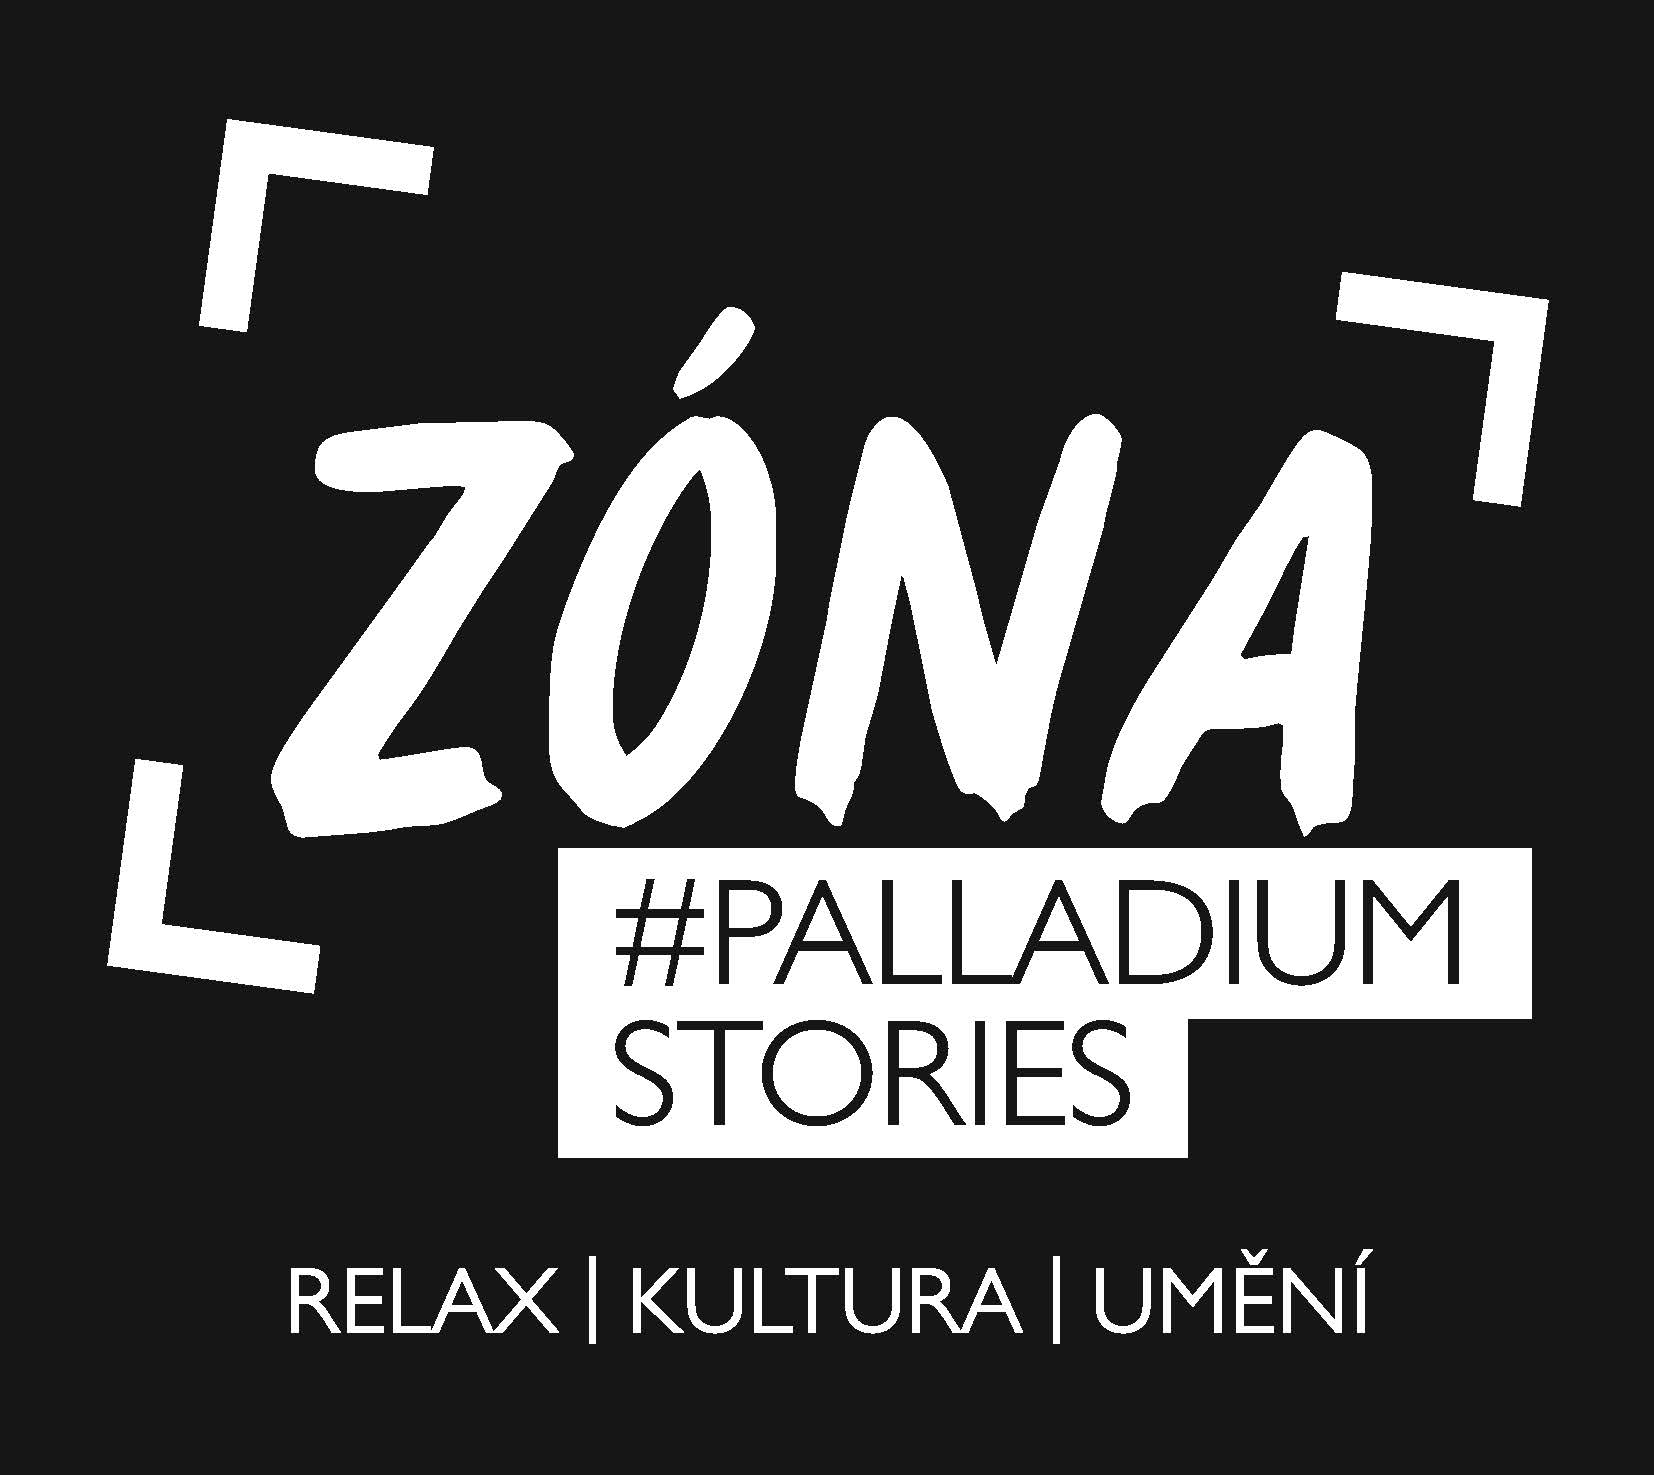 PALLADIUM_ZONA_chill out